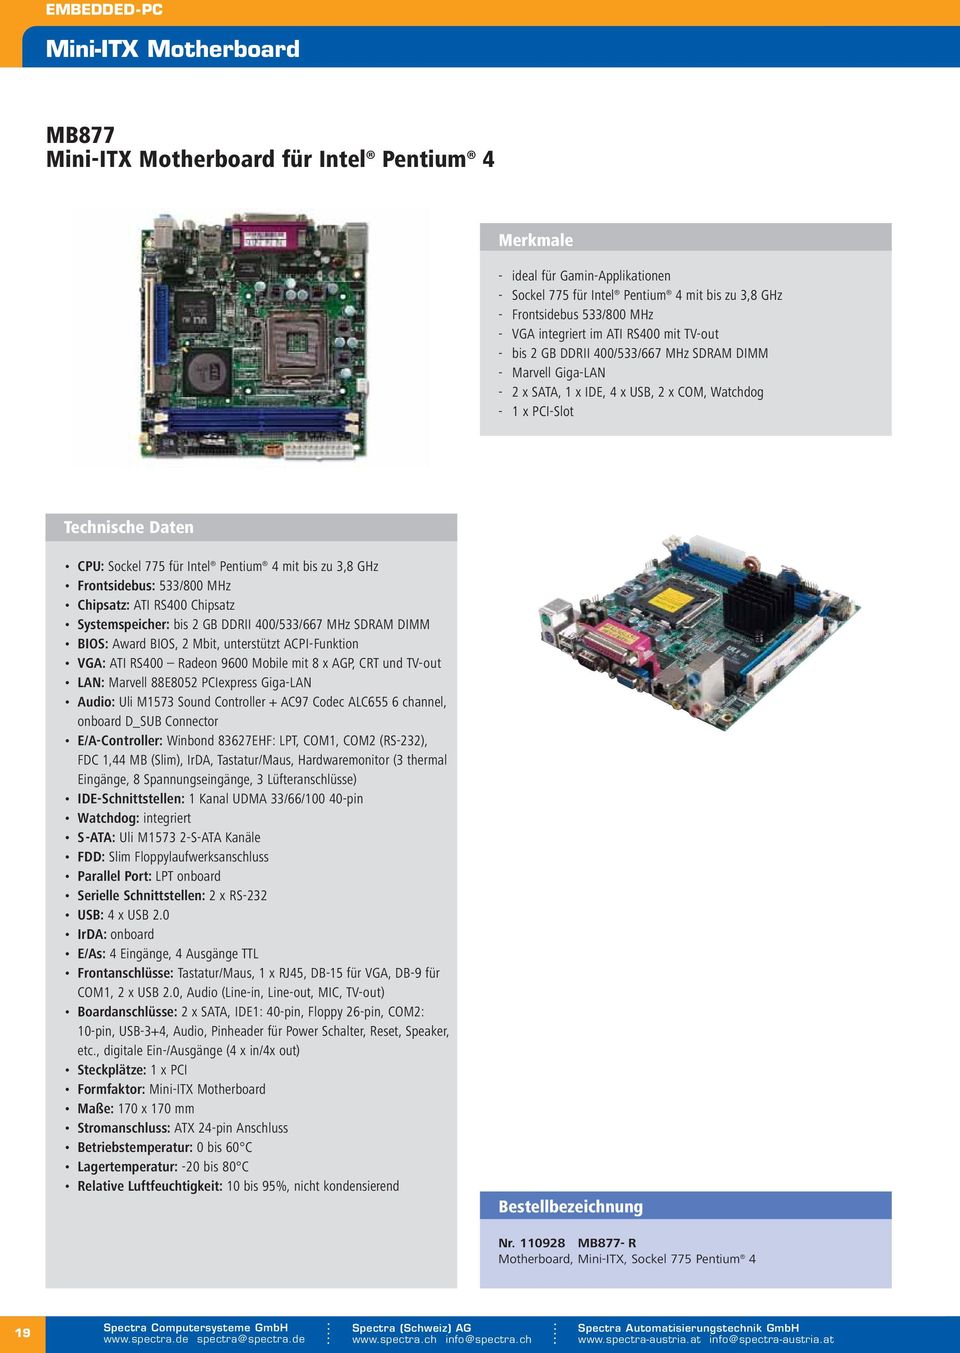 ATI RS400 Chipsatz Systemspeicher: bis 2 GB DDRII 400/533/667 MHz SDRAM DIMM BIOS: Award BIOS, 2 Mbit, unterstützt ACPI-Funktion VGA: ATI RS400 Radeon 9600 Mobile mit 8 x AGP, CRT und TV-out LAN: